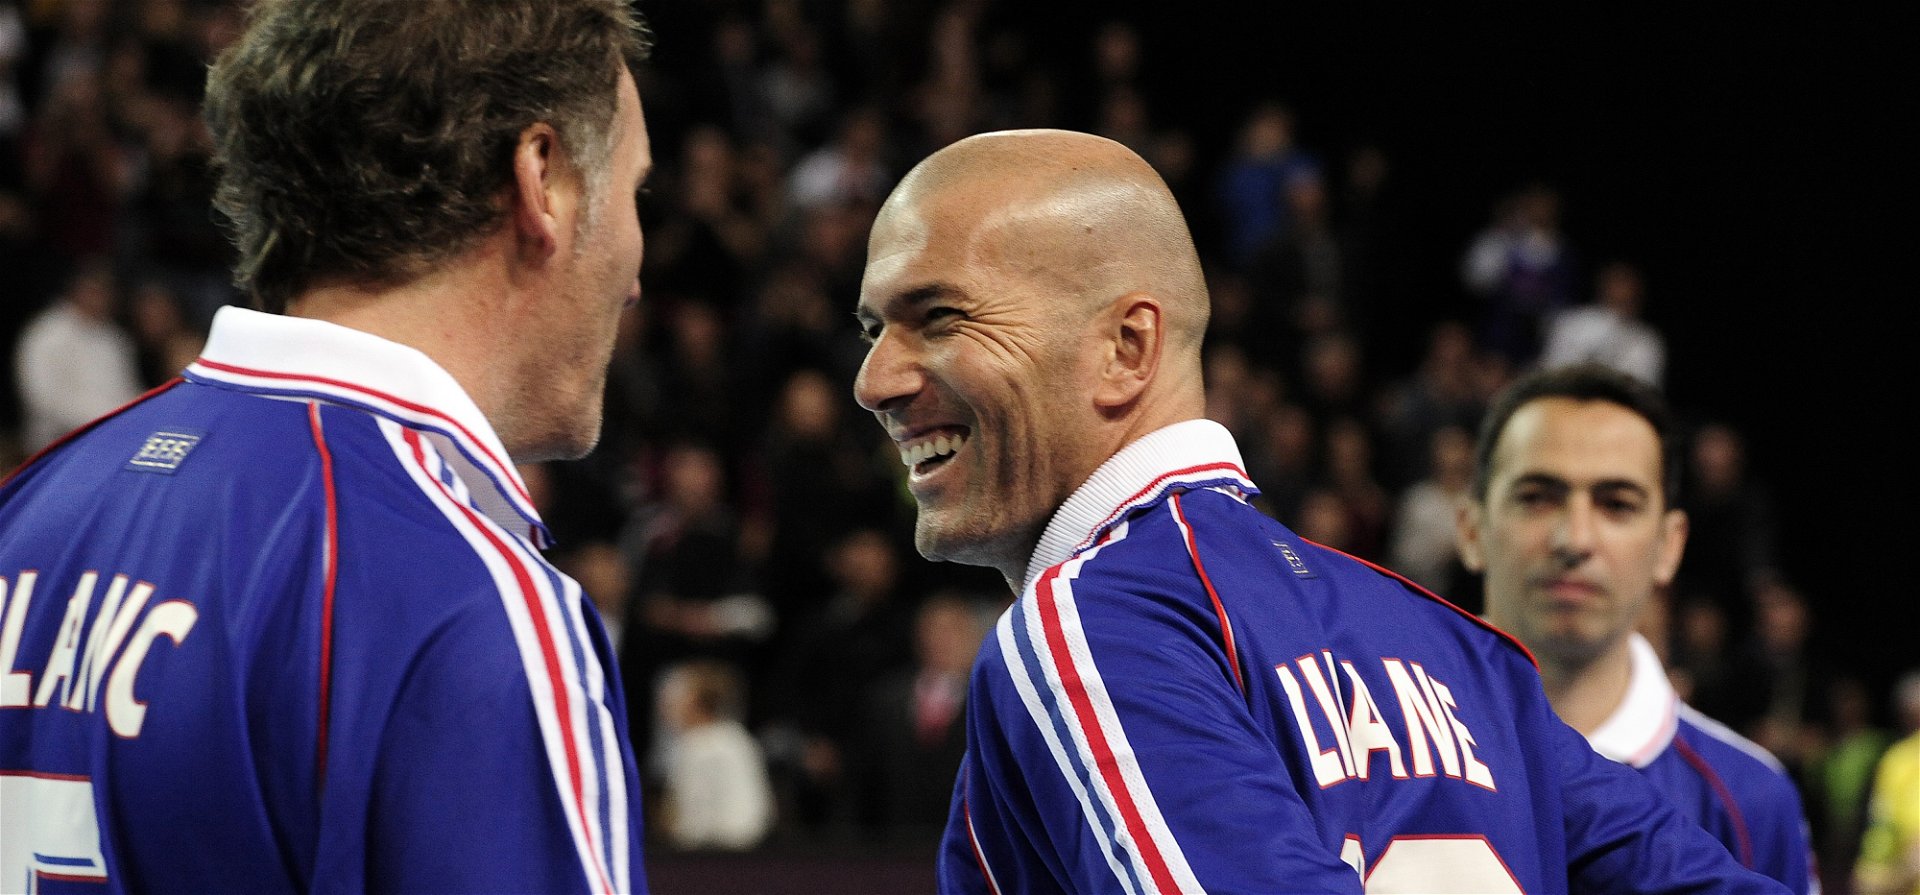 Zidane megint elővette azokat a bizonyos cseleket – videó